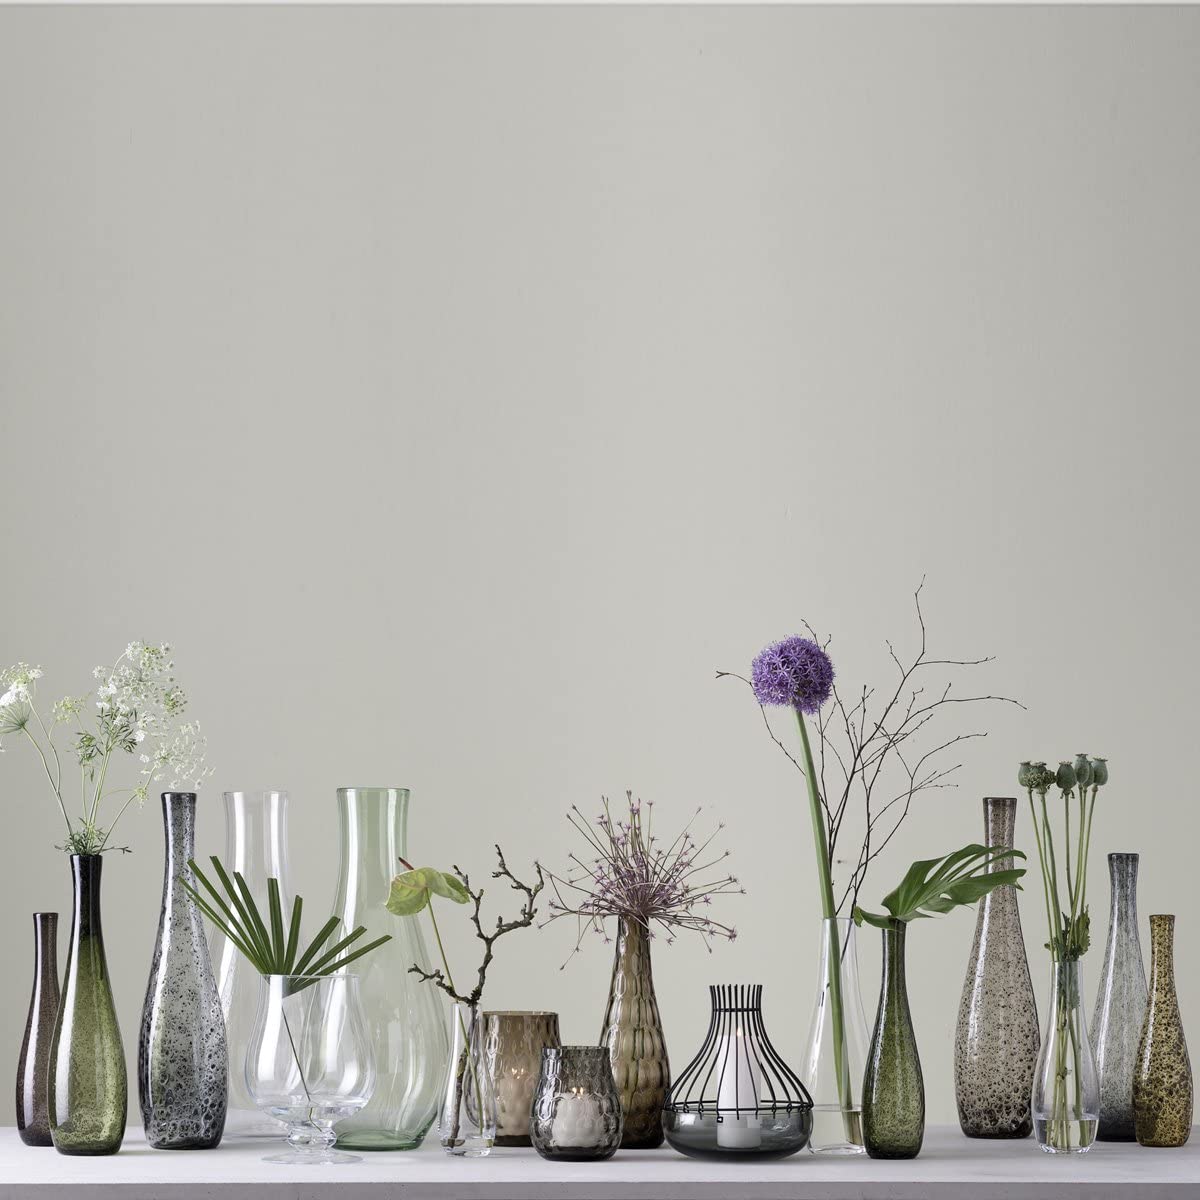 Leonardo Giardino 034904 Glass Vase, Handmade Decorative Vase in Brown, Bulky Flower Vase, Height 400 mm